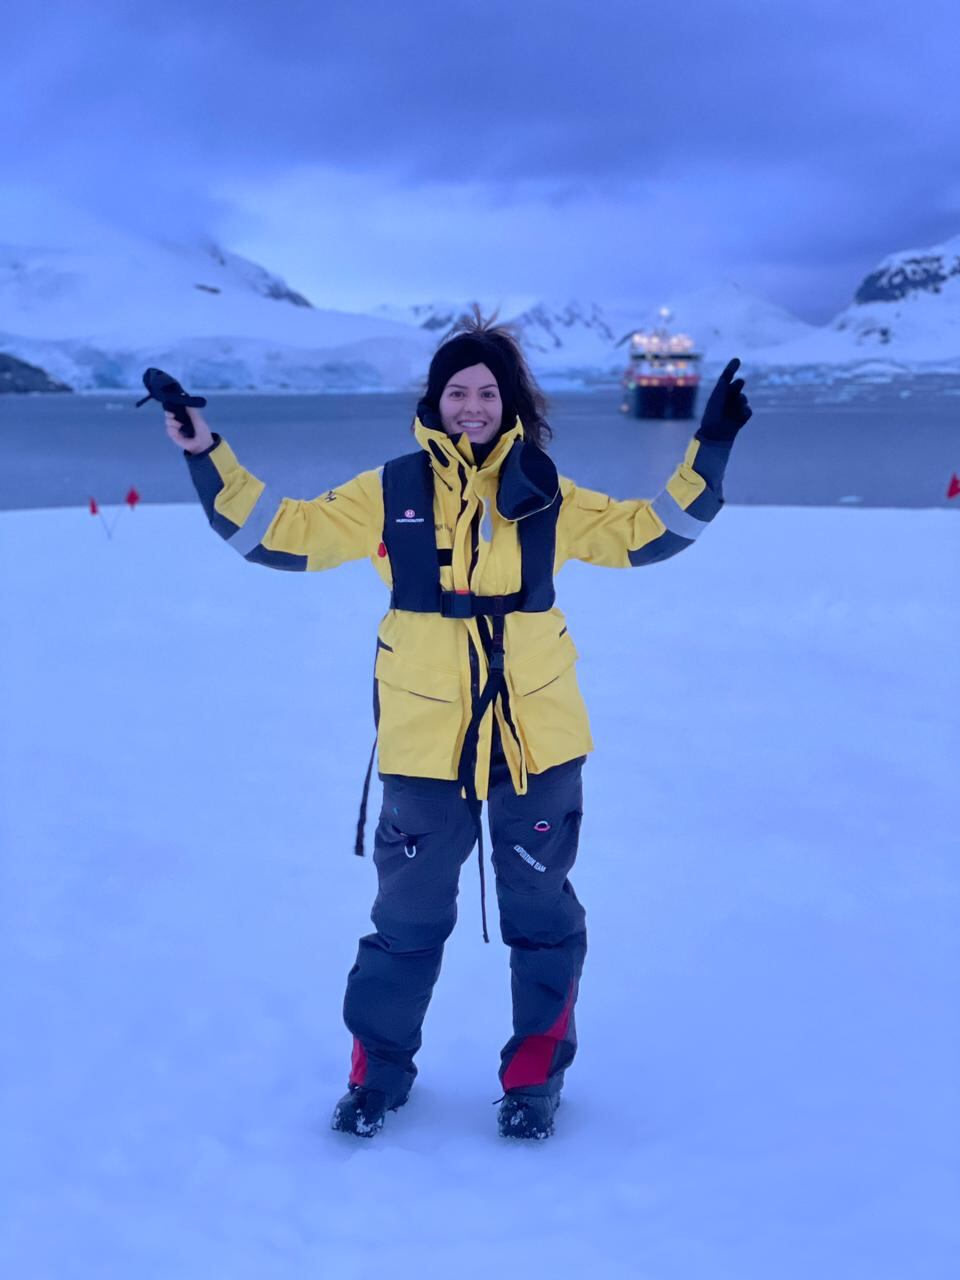 A turismóloga brasileira Larissa Borrelli, que é guia em expedições de navio na Antártida.